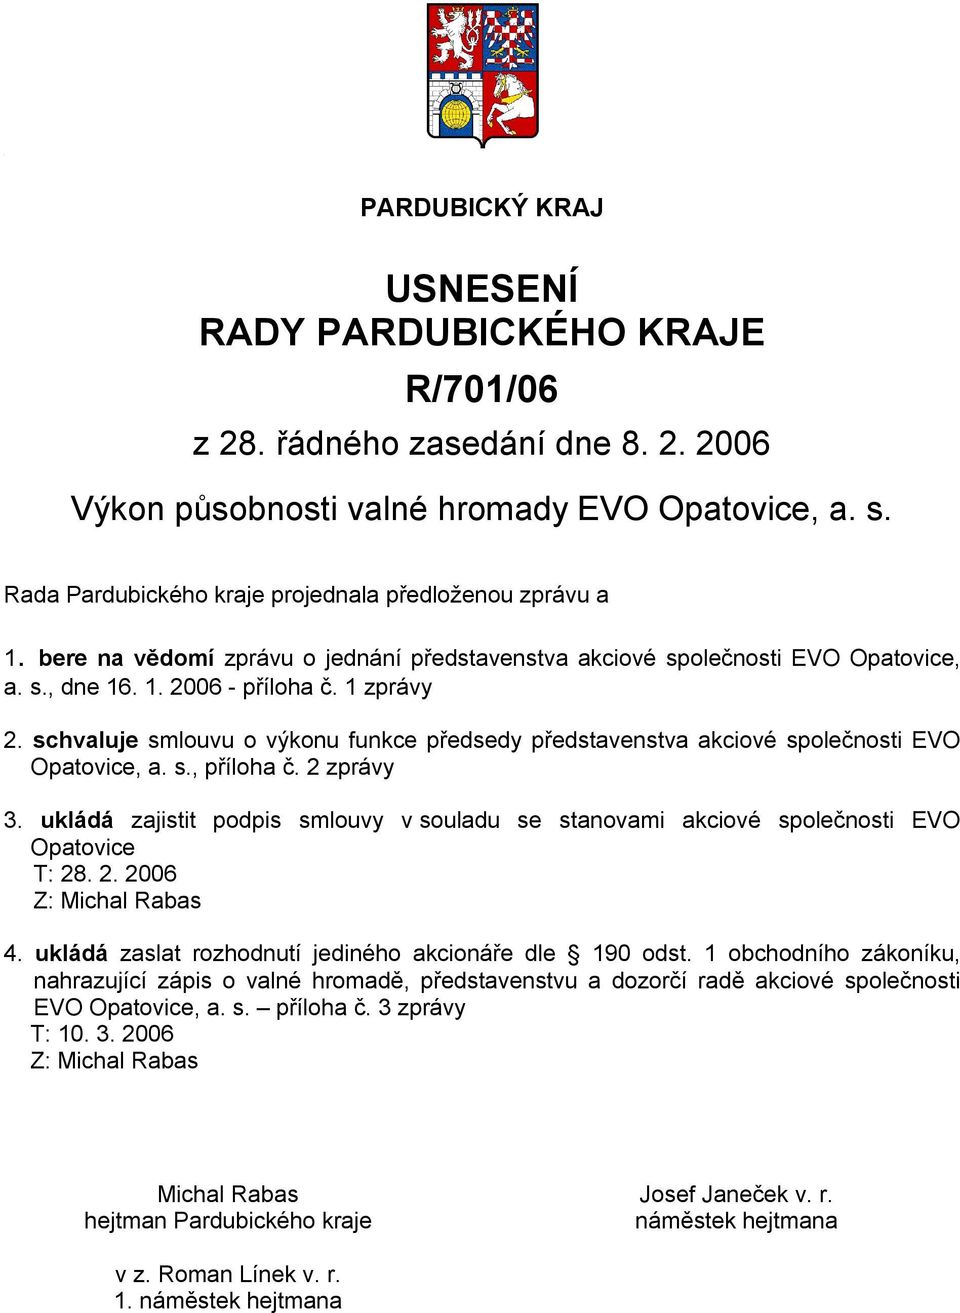 ukládá zajistit podpis smlouvy v souladu se stanovami akciové společnosti EVO Opatovice Z: Michal Rabas 4. ukládá zaslat rozhodnutí jediného akcionáře dle 190 odst.